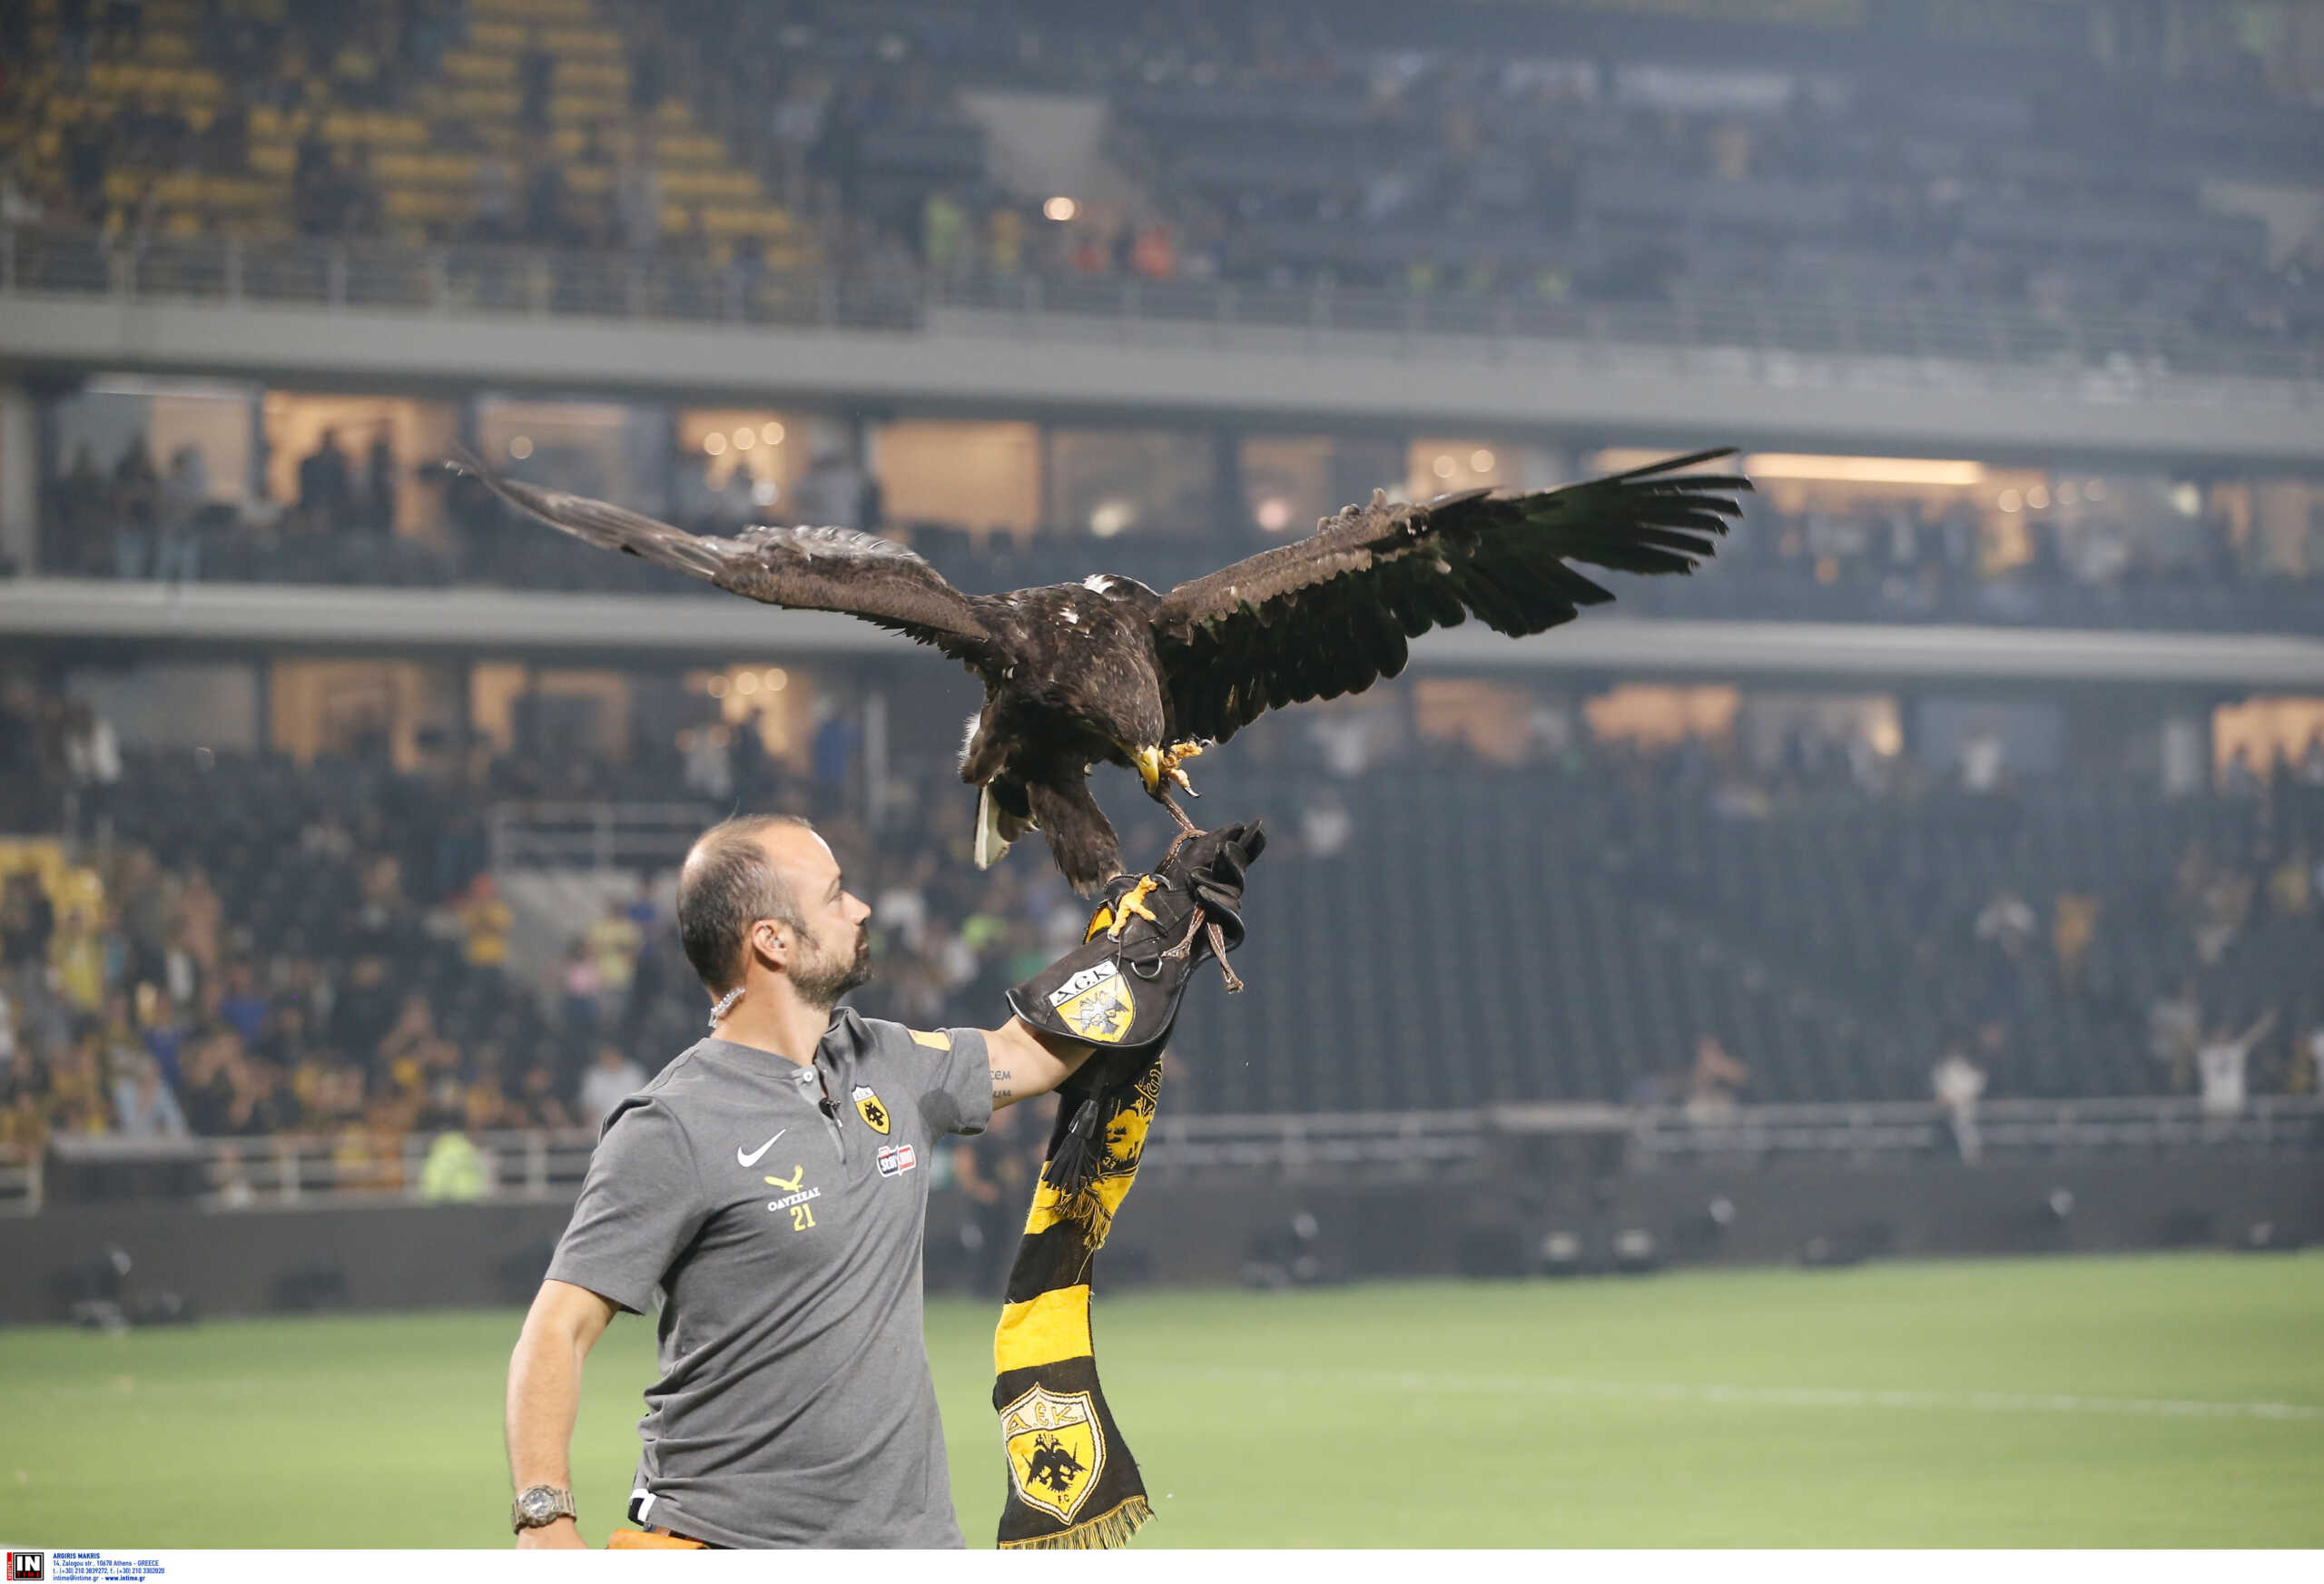 OPAP Arena: Πέταξε και ο αετός στα εγκαίνια του νέου γηπέδου της ΑΕΚ